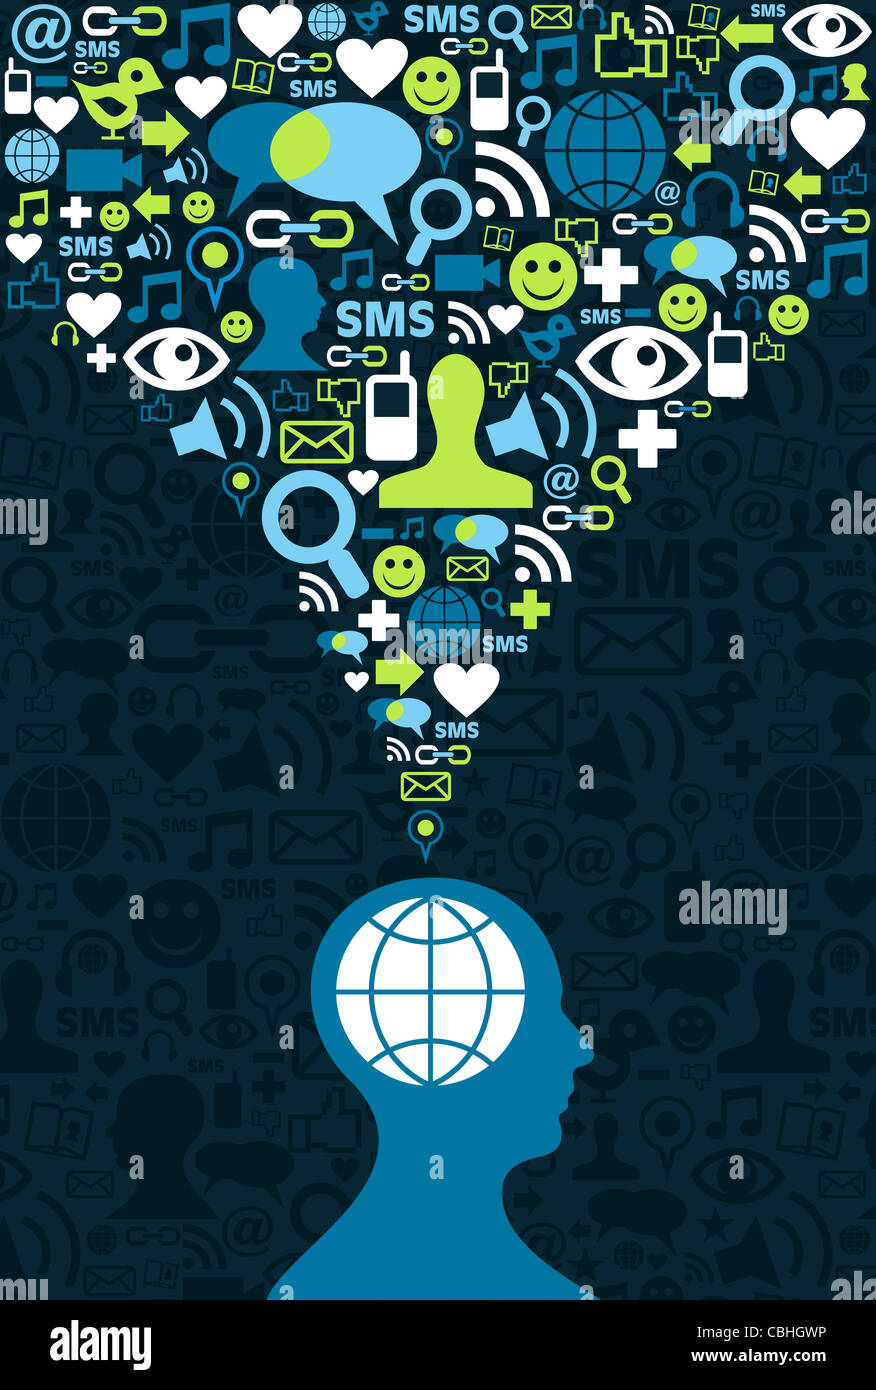 Single Mann Abbildung konzeptionelle social-Media Kommunikation Splash mit Icon-Set. Abbildung Vektor Hintergrund-Datei zur Verfügung. Stockfoto